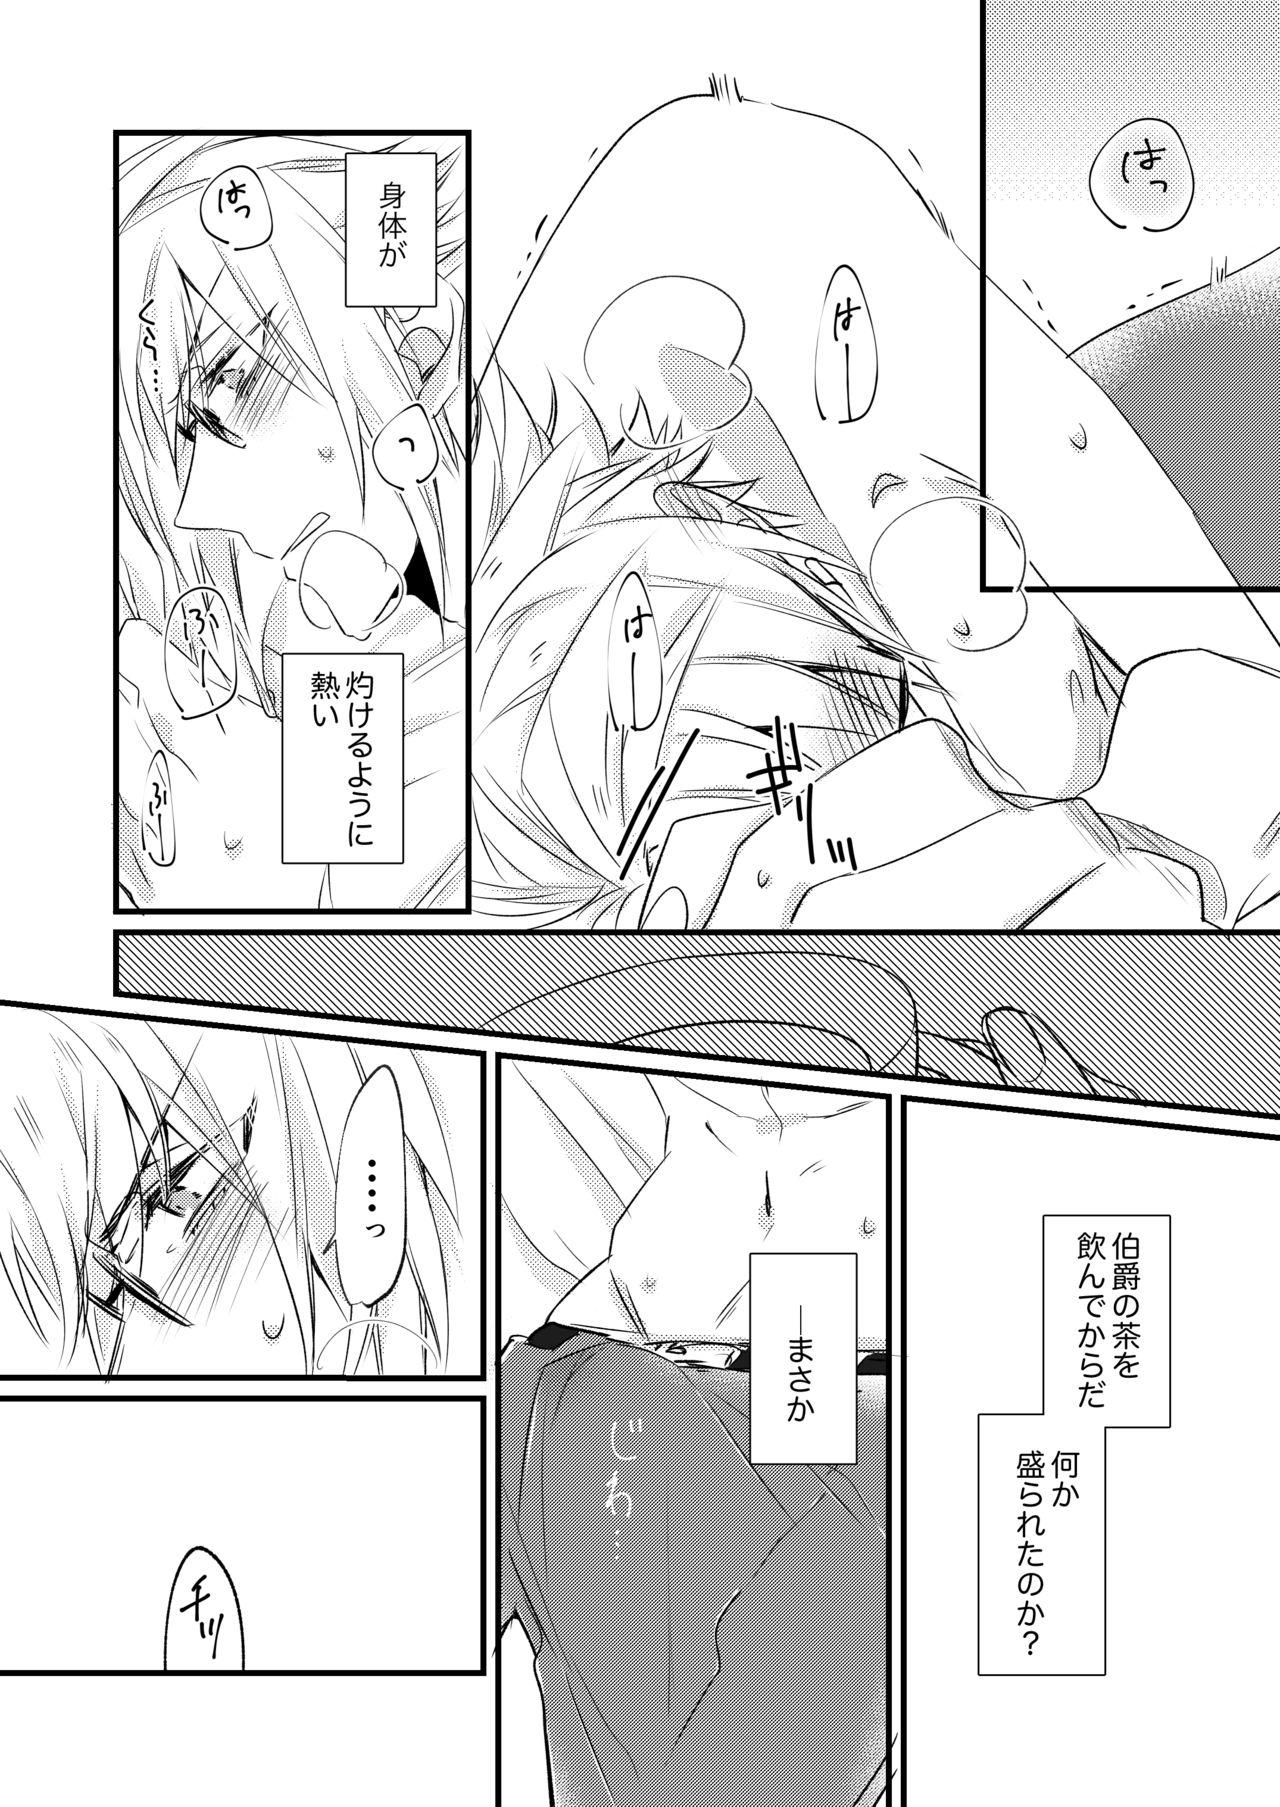 No Condom 熱におぼれる - Code realize sousei no himegimi Boyfriend - Page 10